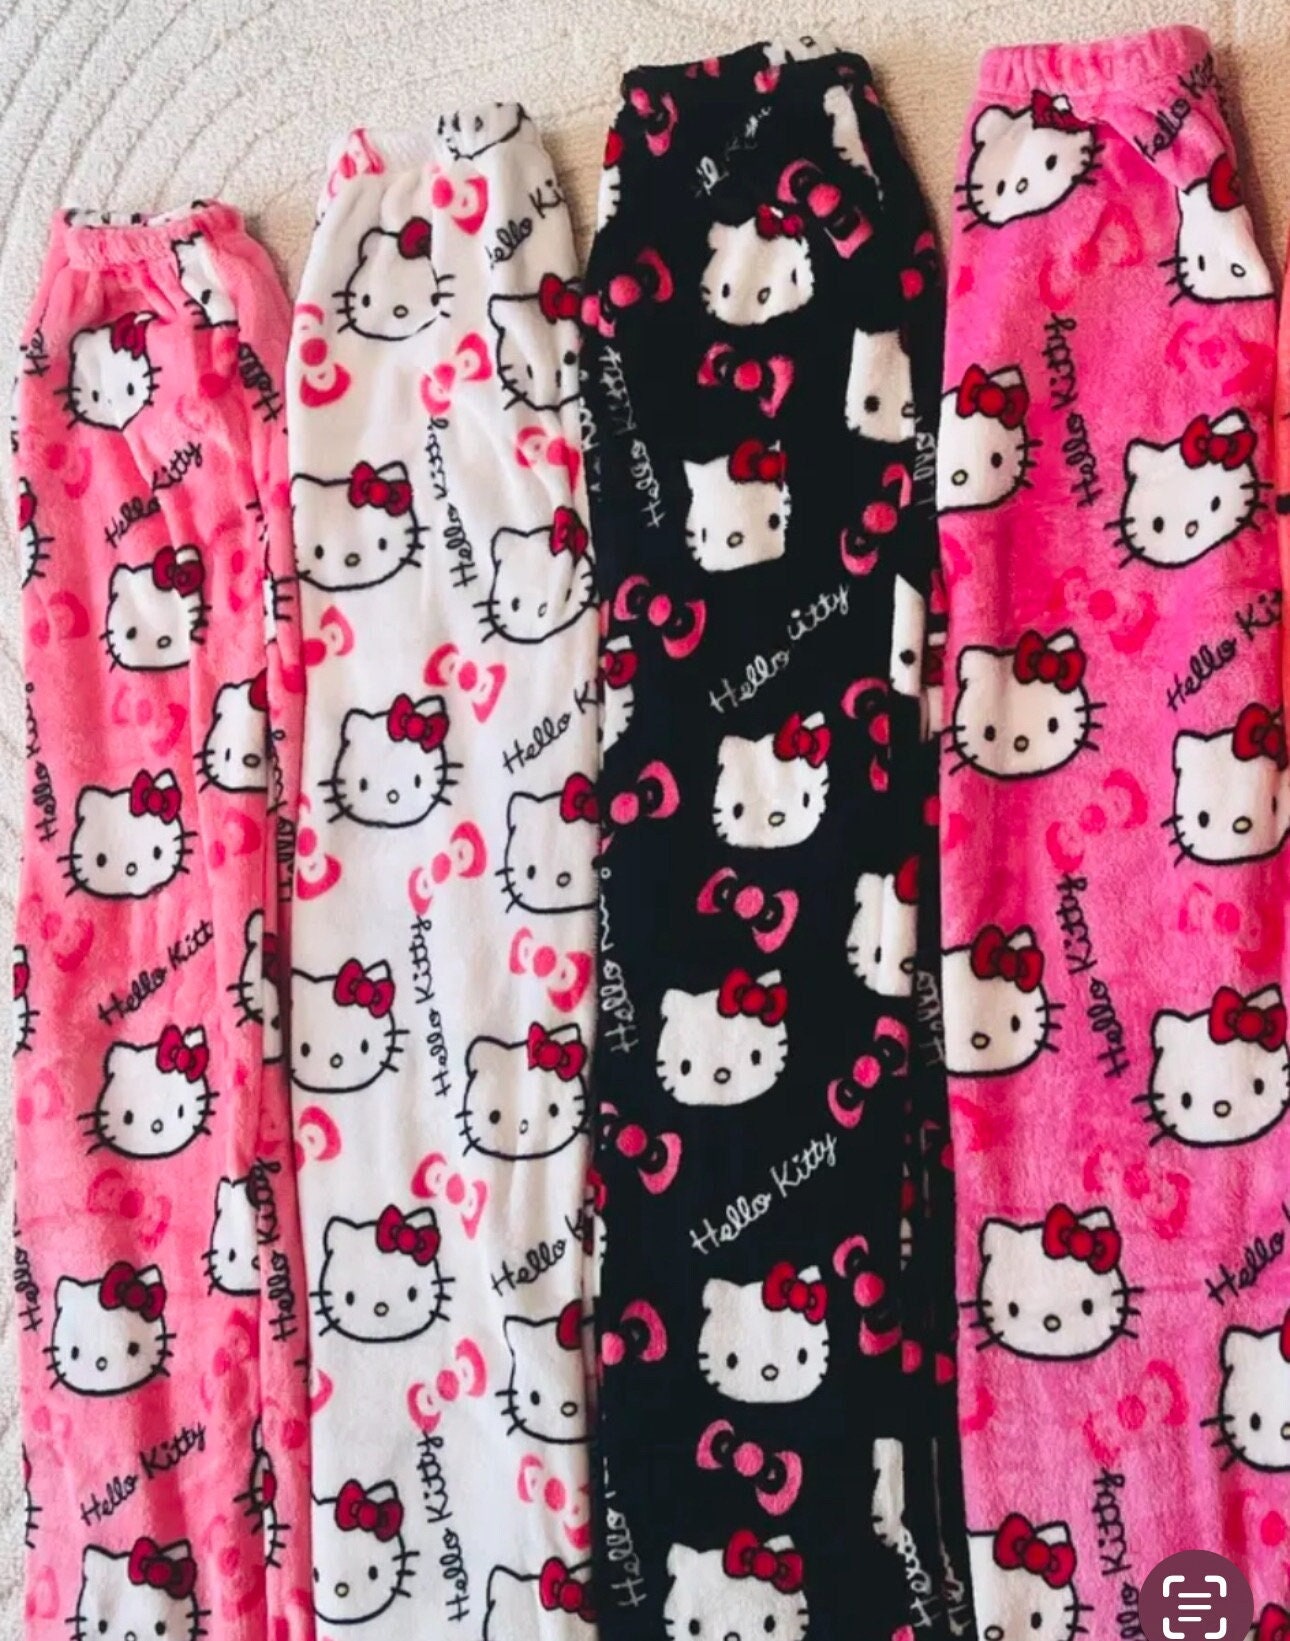 Halloween Sanrio Hello Kitty Pajama Pants Women's Trendy Autumn